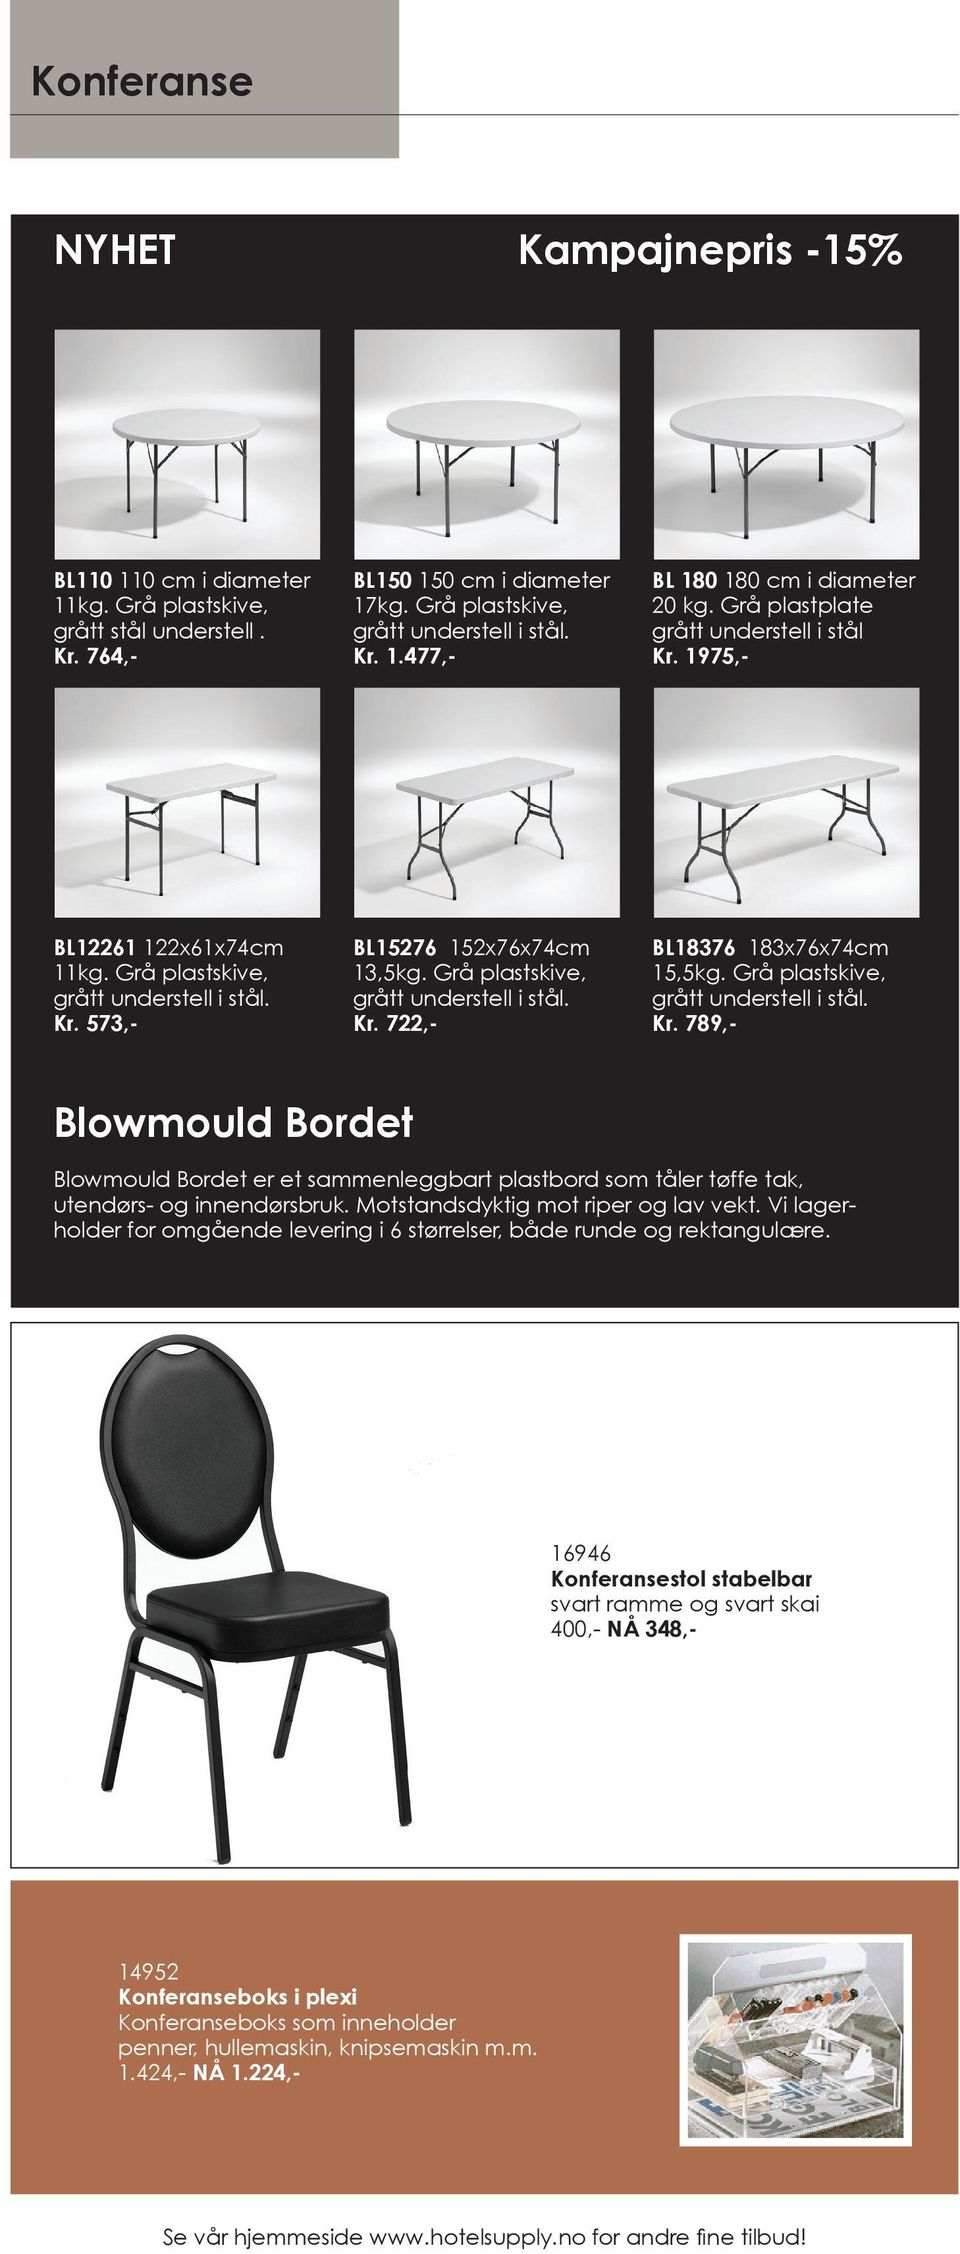 Grå plastskive, Kr. 789,- Blowmould Bordet Blowmould Bordet er et sammenleggbart plastbord som tåler tøffe tak, utendørs- og innendørsbruk. Motstandsdyktig mot riper og lav vekt.